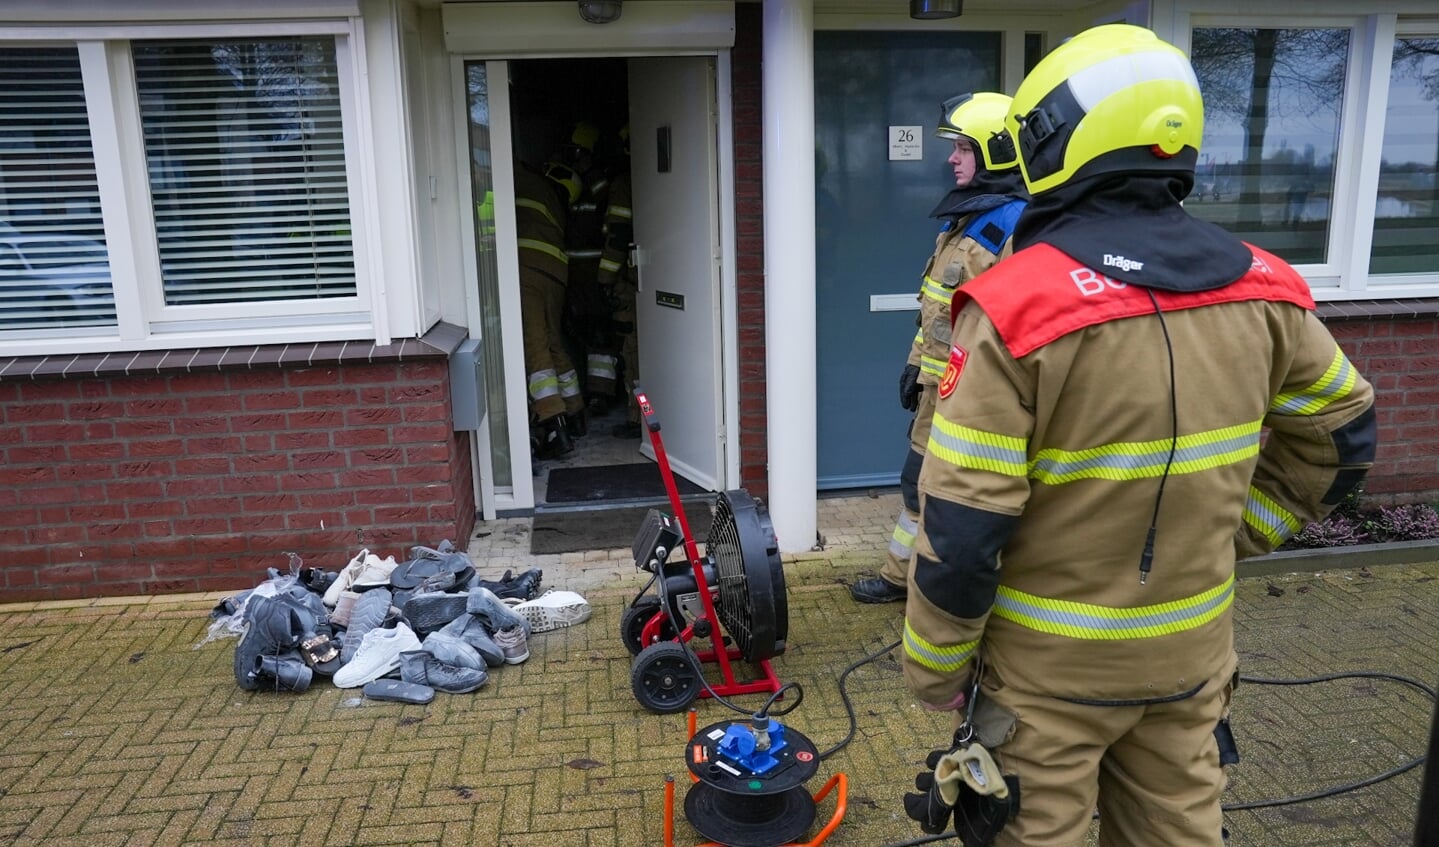 Brandweer opgeroepen voor brand in meterkast in woning Oosthaag